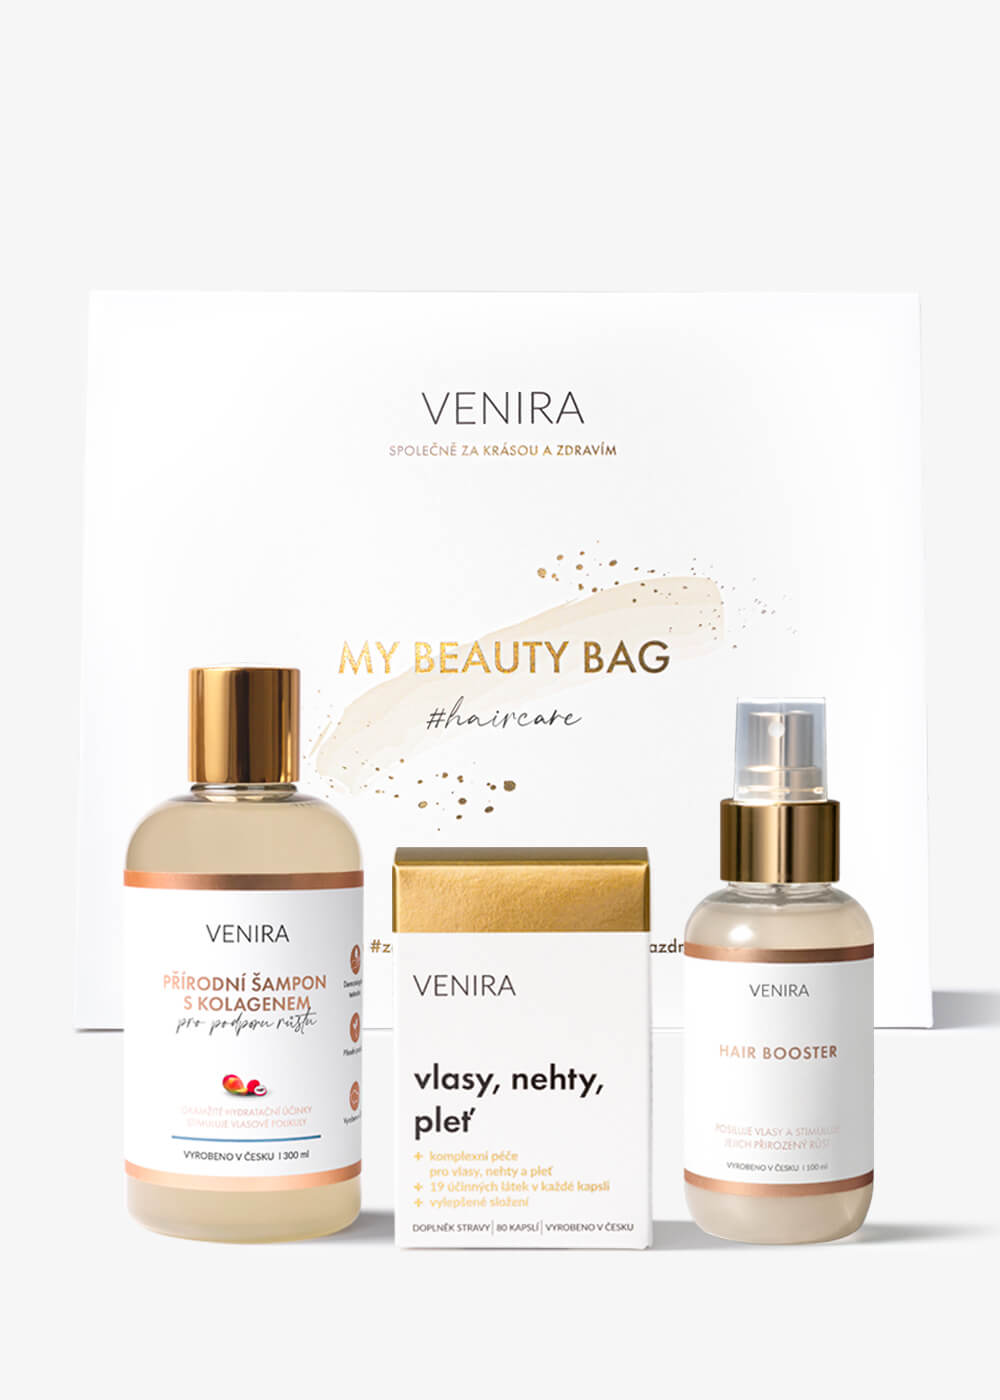 VENIRA beauty bag, darčeková sada pre podporu rastu vlasov -kapsule pre vlasy, šampón s kolagénom pre podporu rastu, hair booster kapsule pre vlasy, šampón s kolagénom pre podporu rastu,